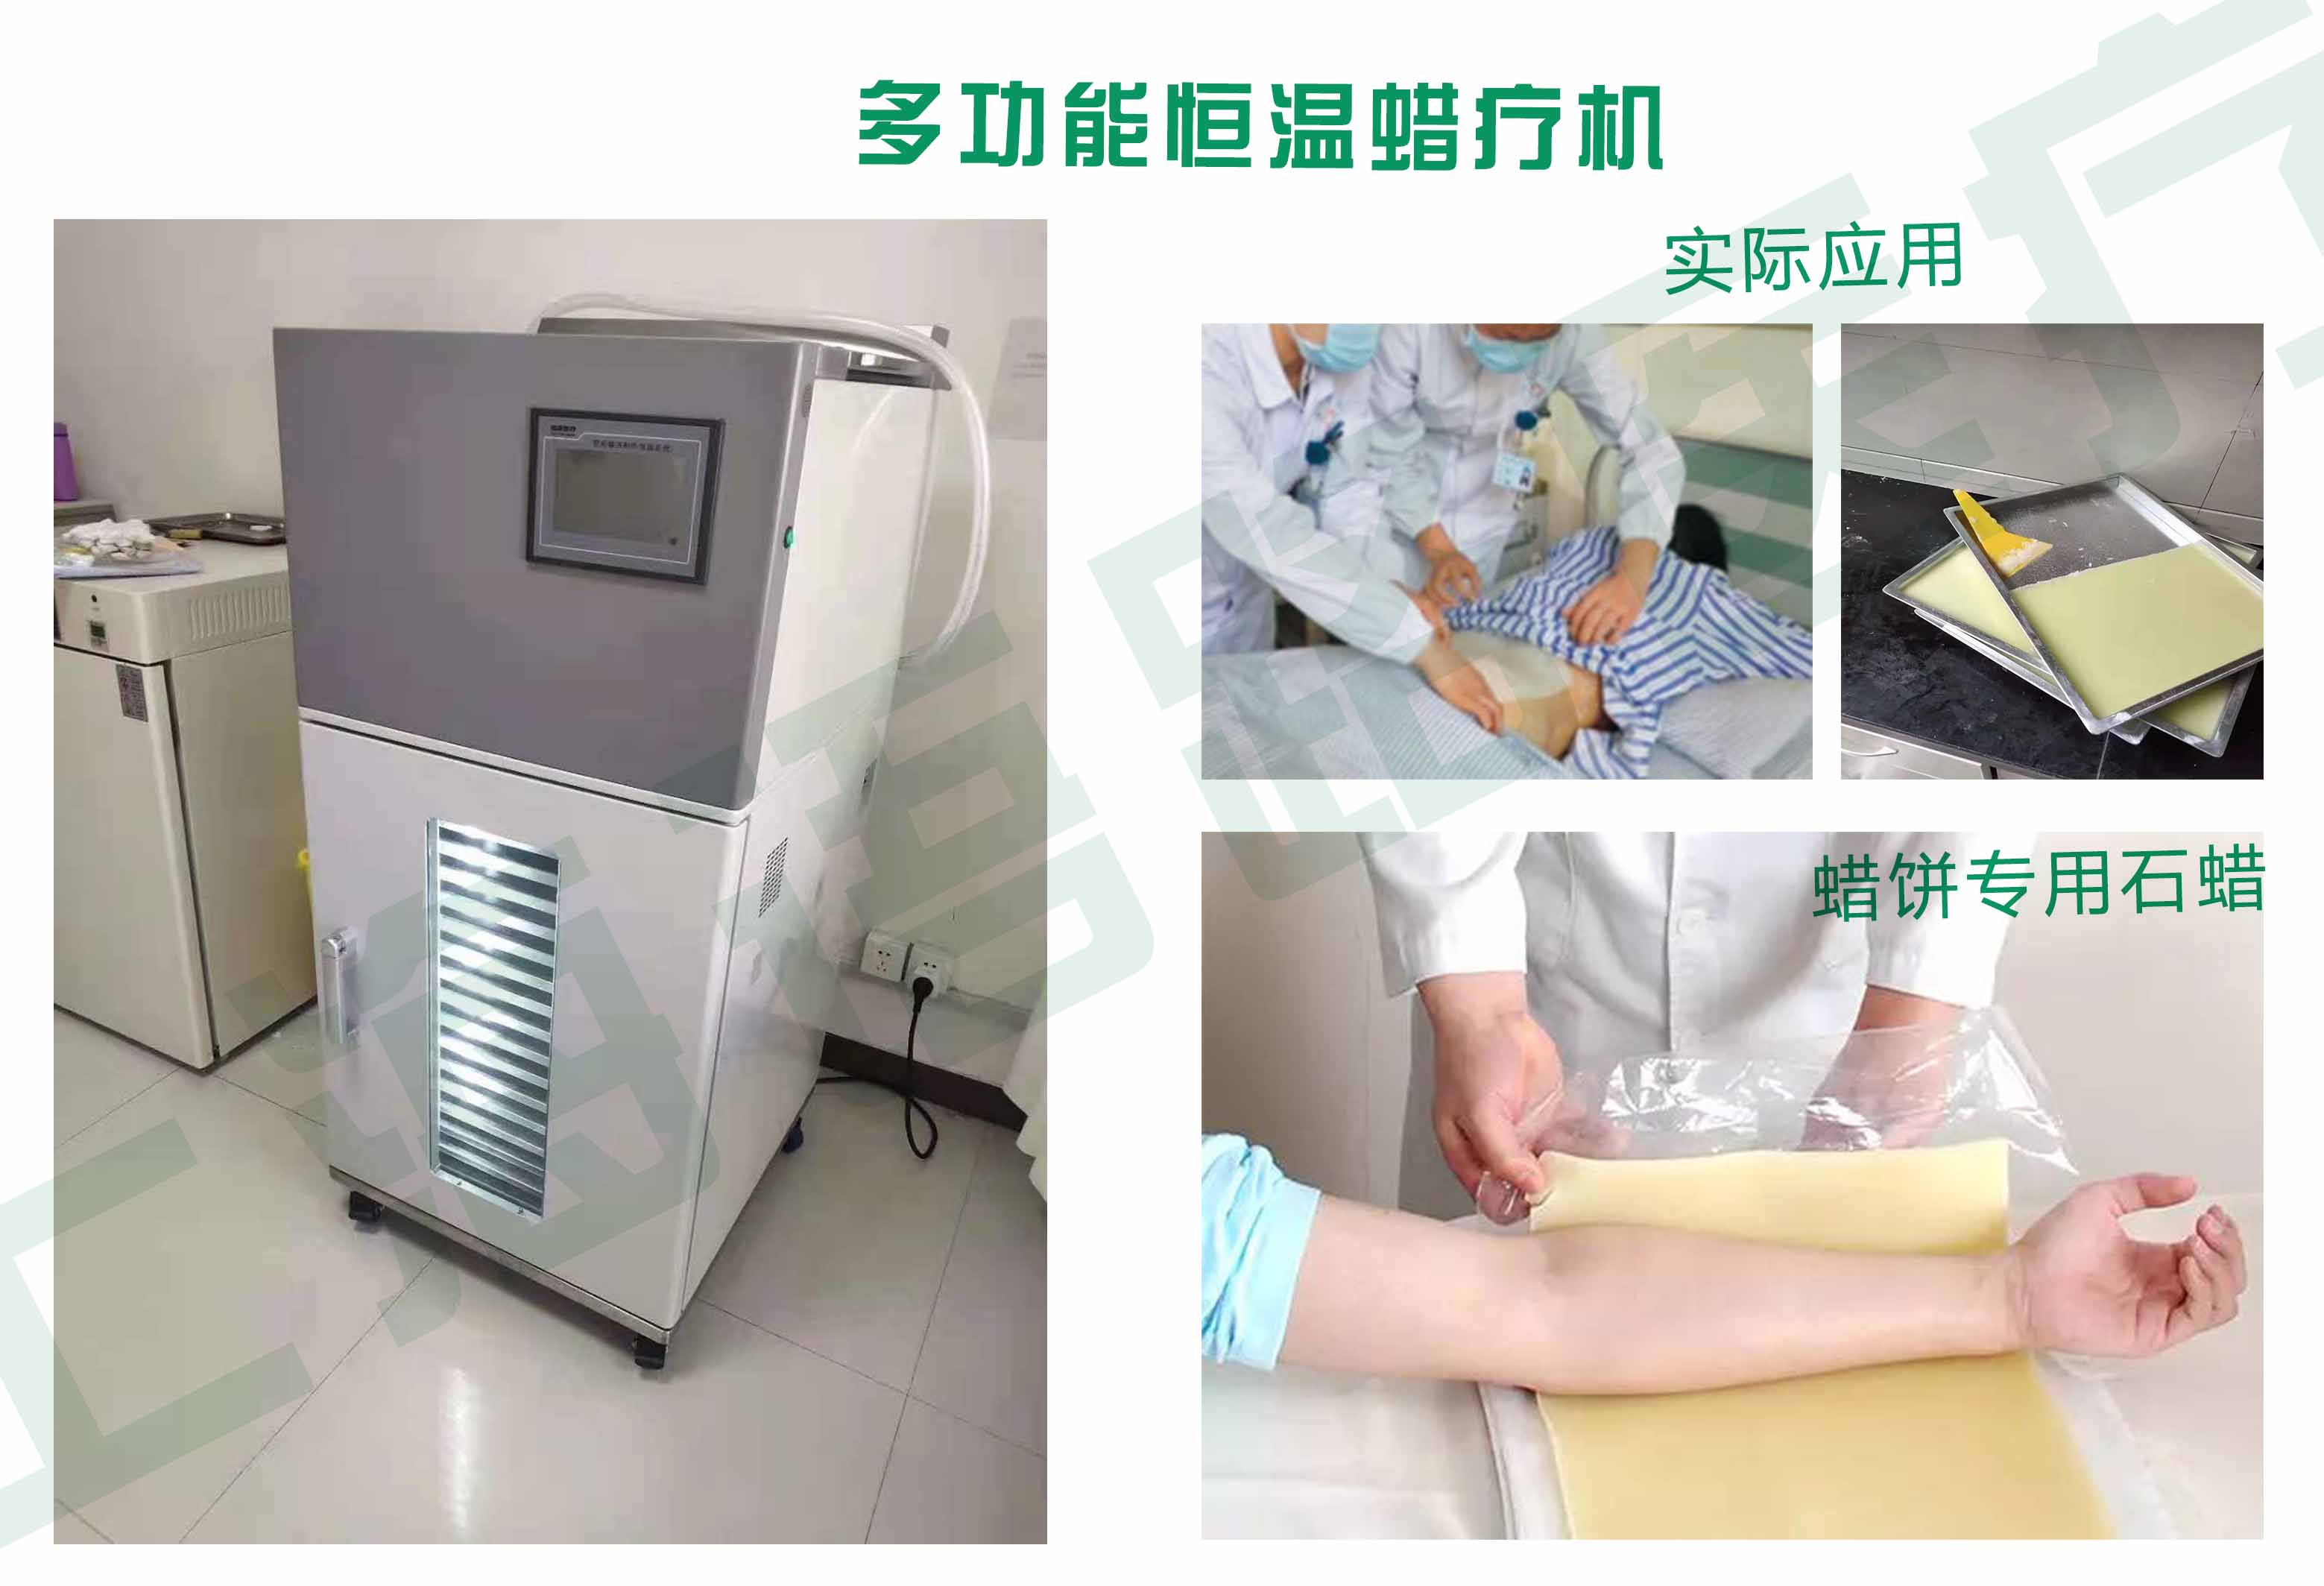 【语路医疗】中医非药物外治技术——多功能恒温蜡疗机